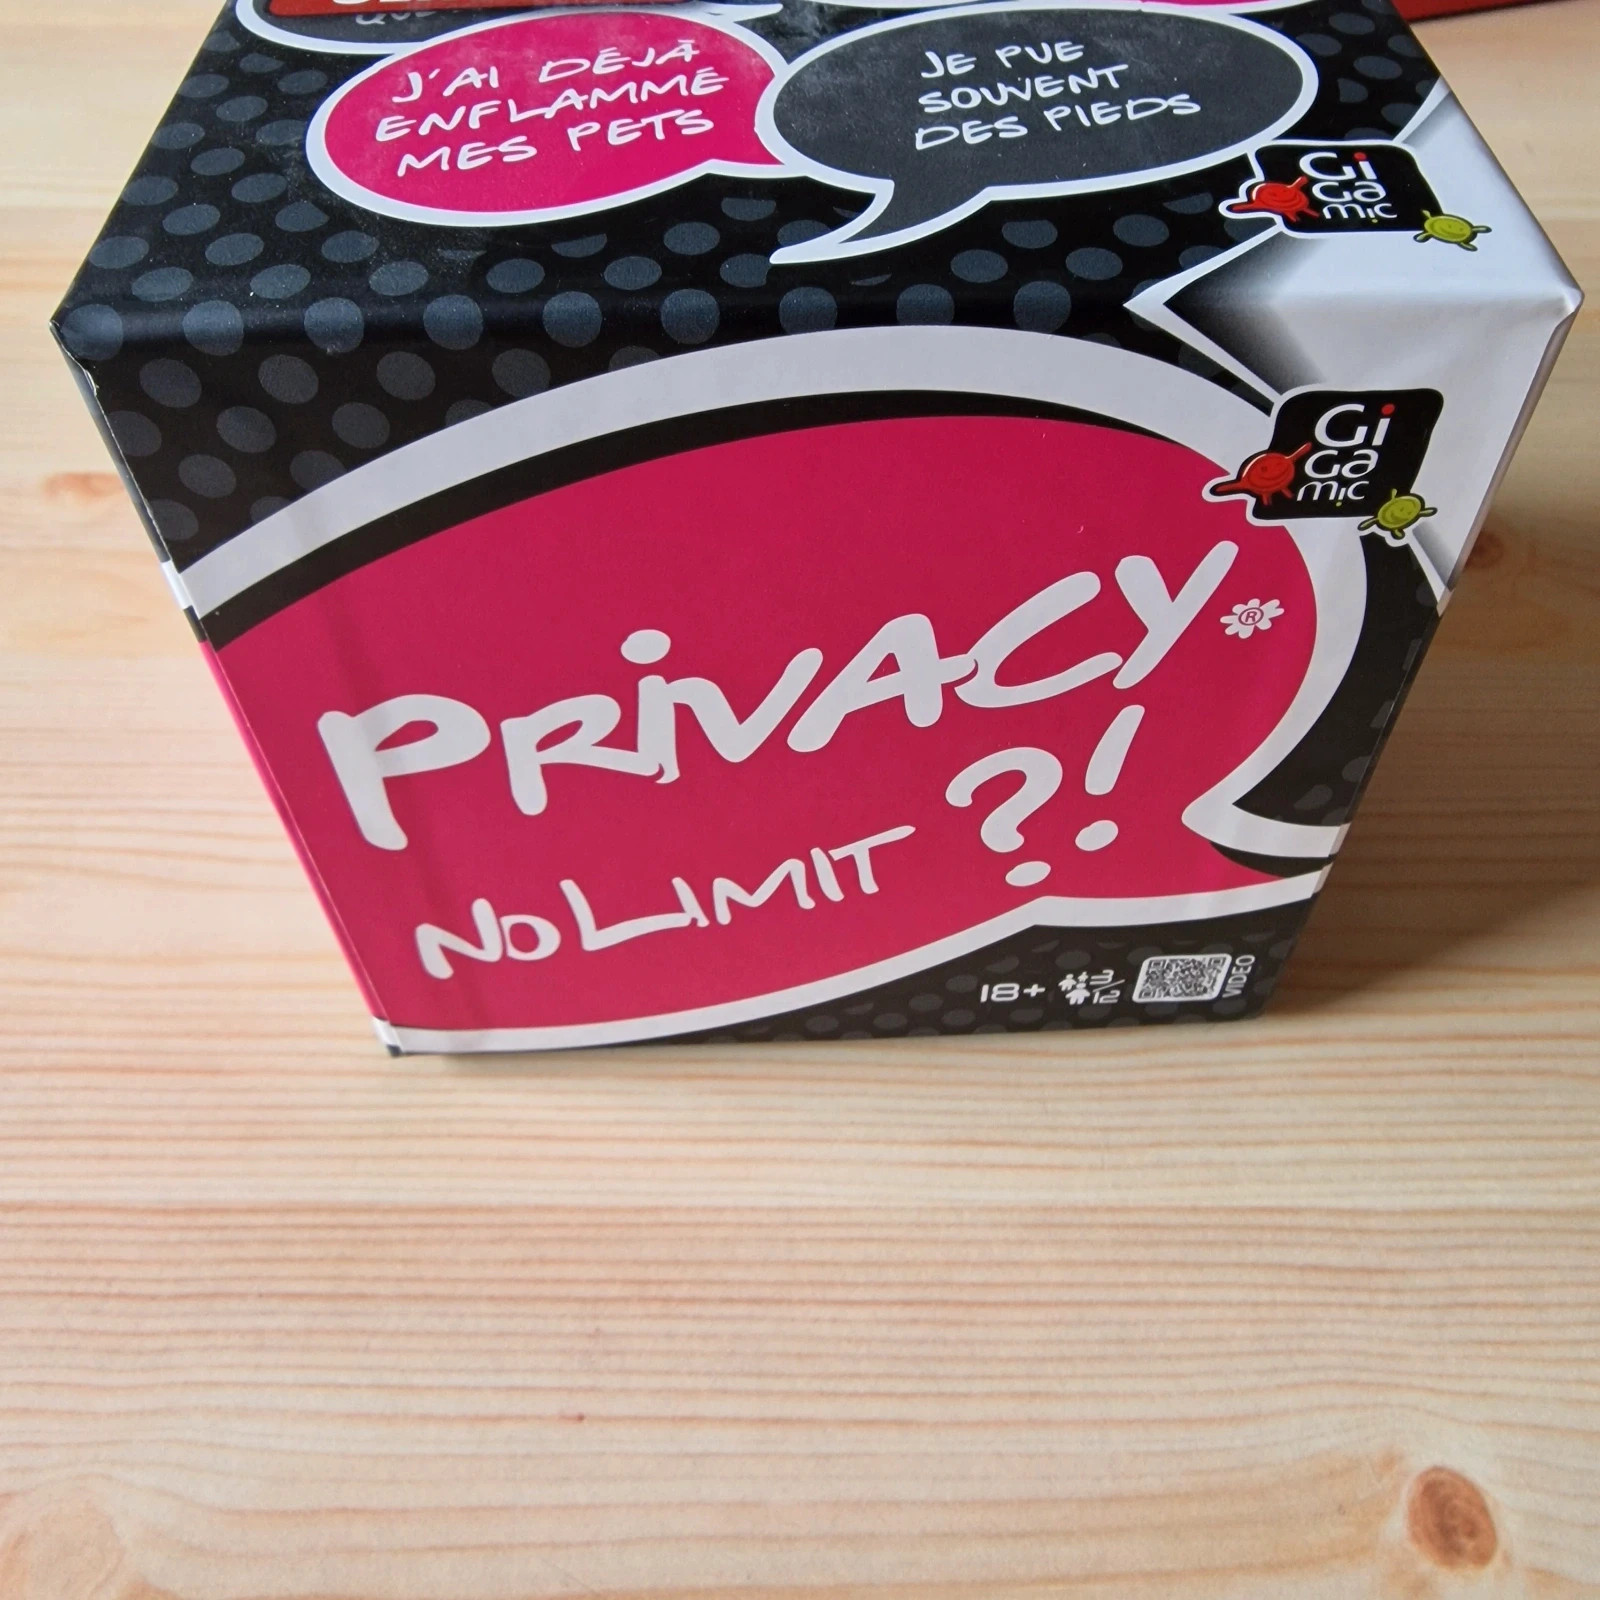 Privacy no limit ,Jeu d'ambiance ,jeu de société Gigamic